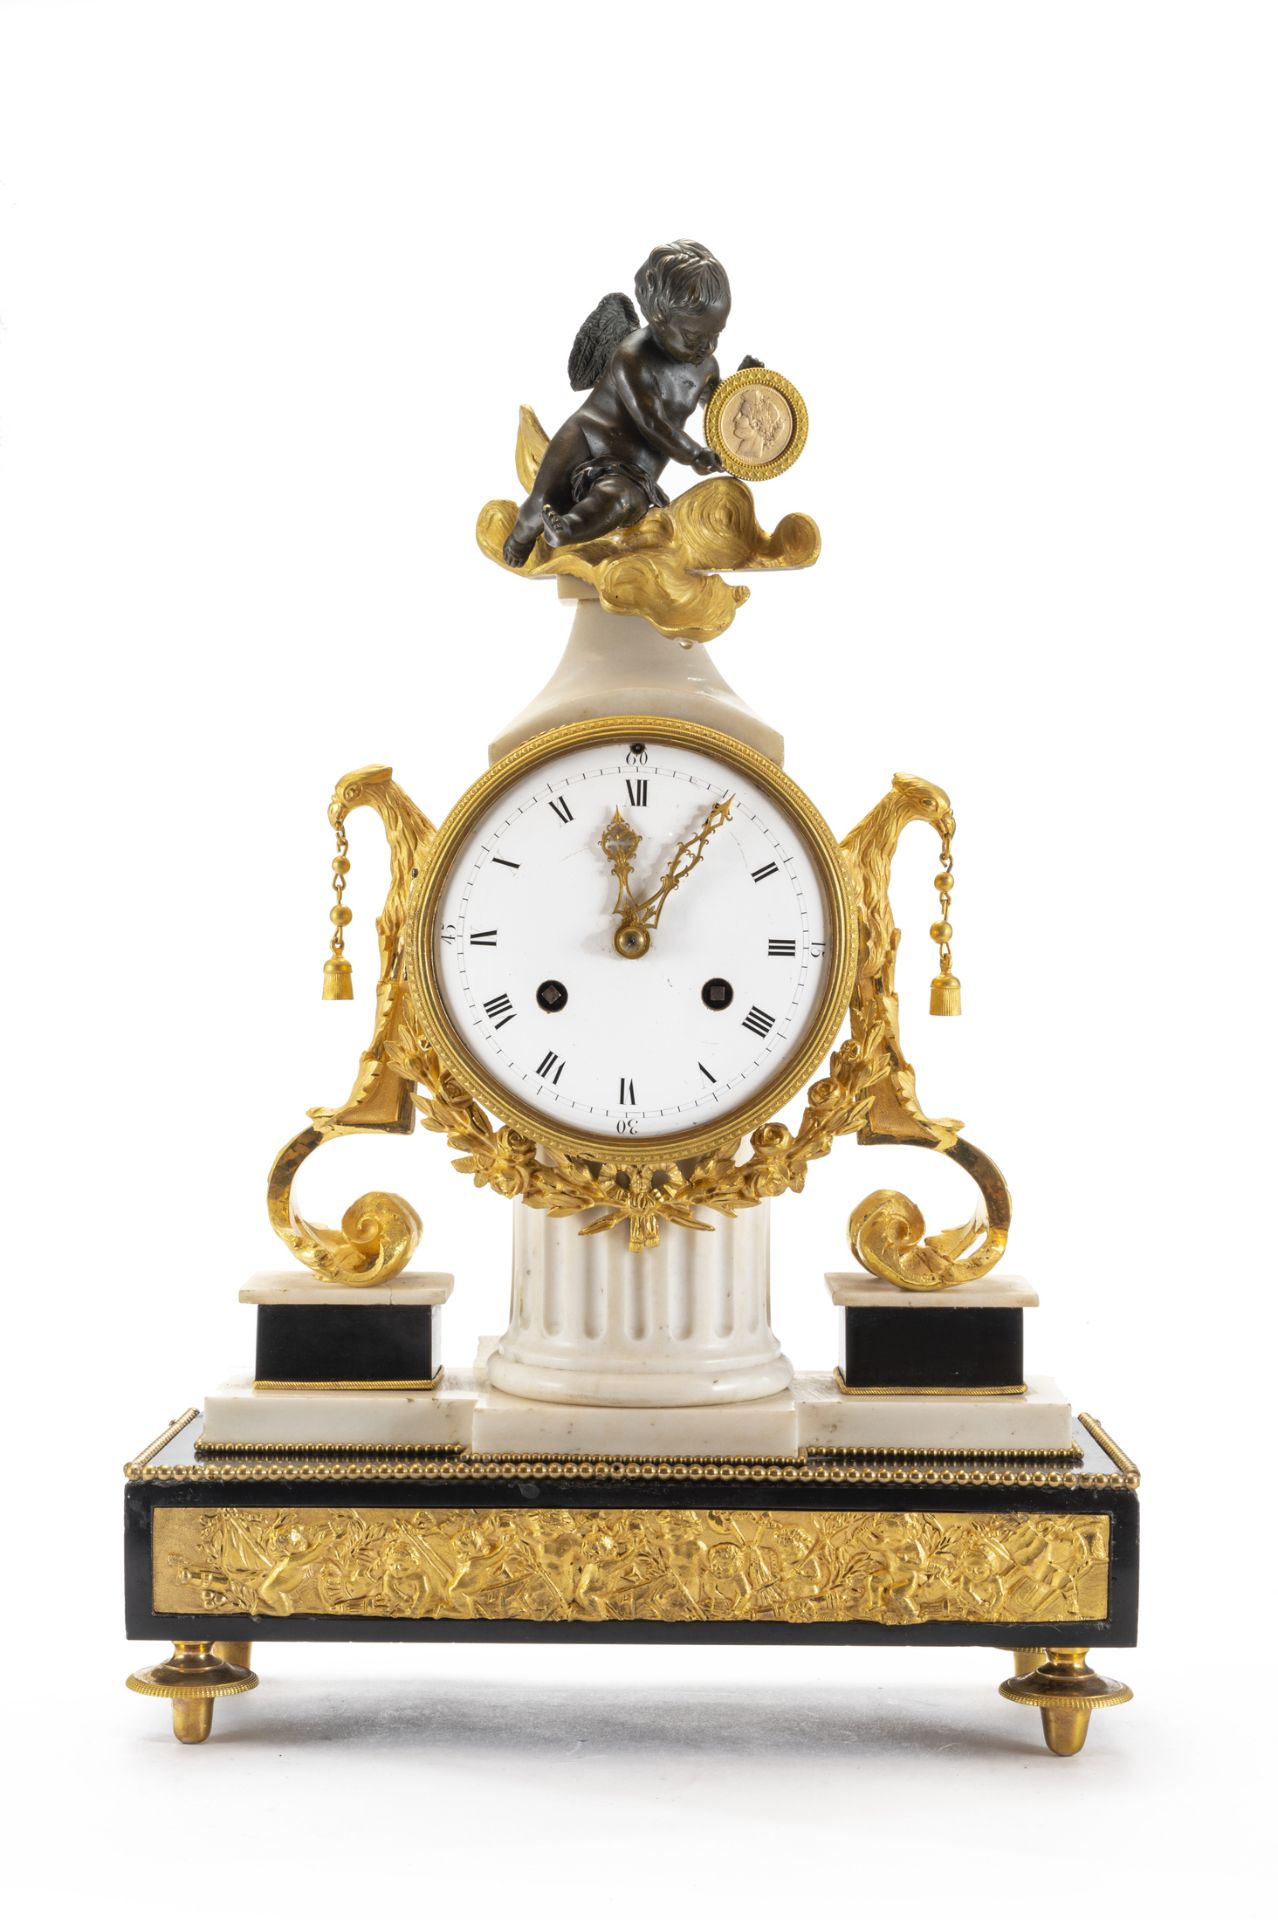 Orologio da appoggio francese in marmo bianco e nero, bronzo dorato al mercurio e in patina scura